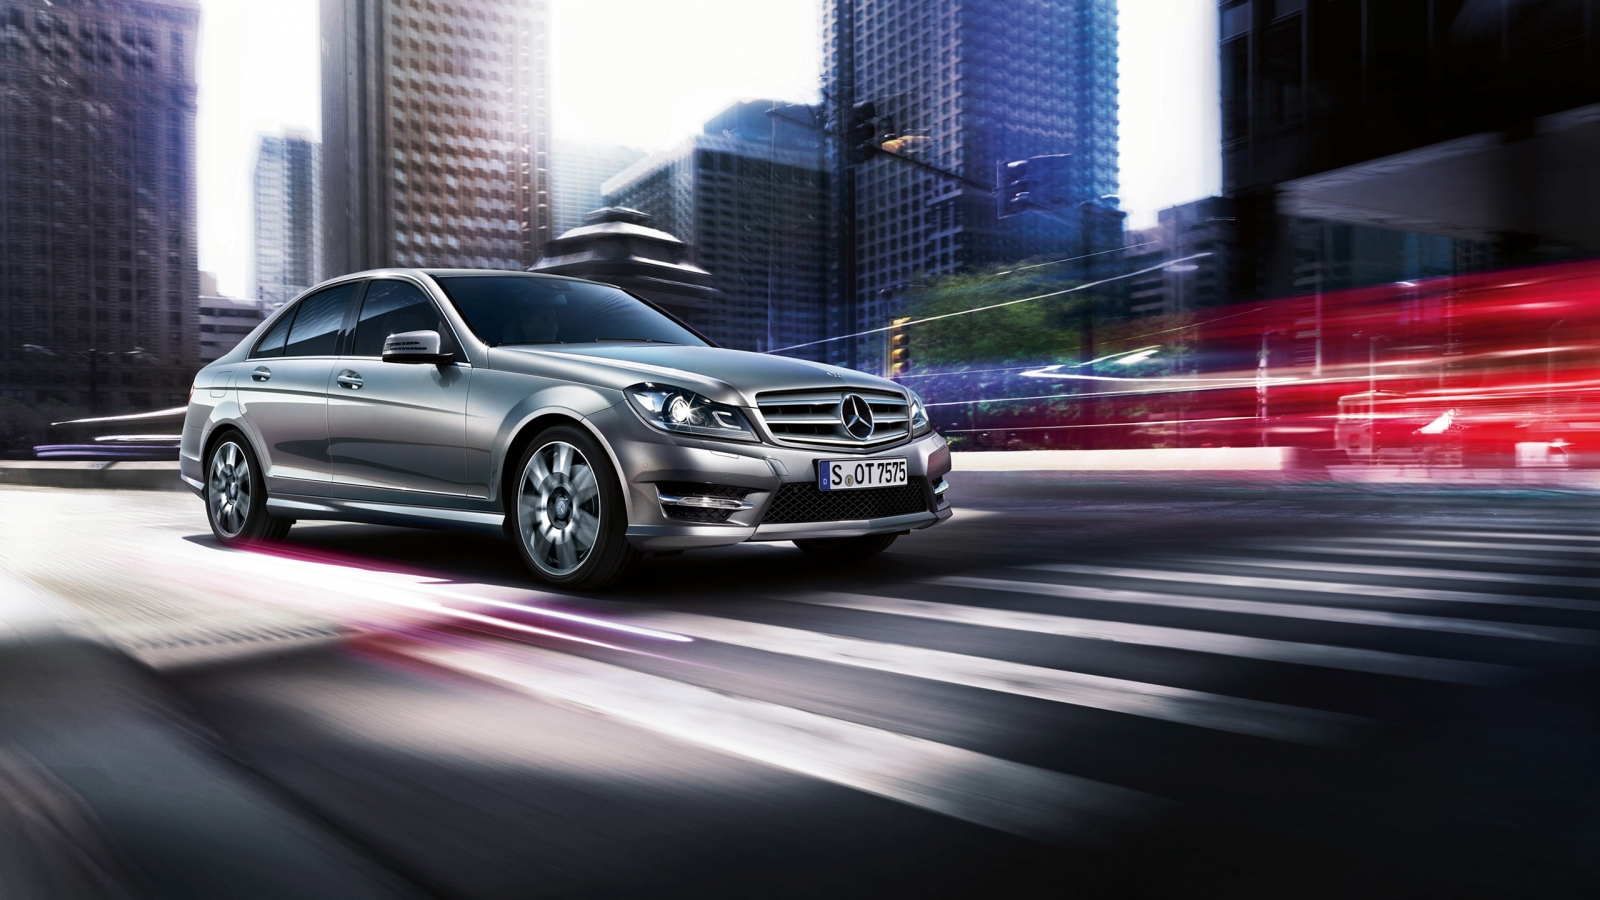 2013 Mercedes-Benz C Class for 1600 x 900 HDTV resolution